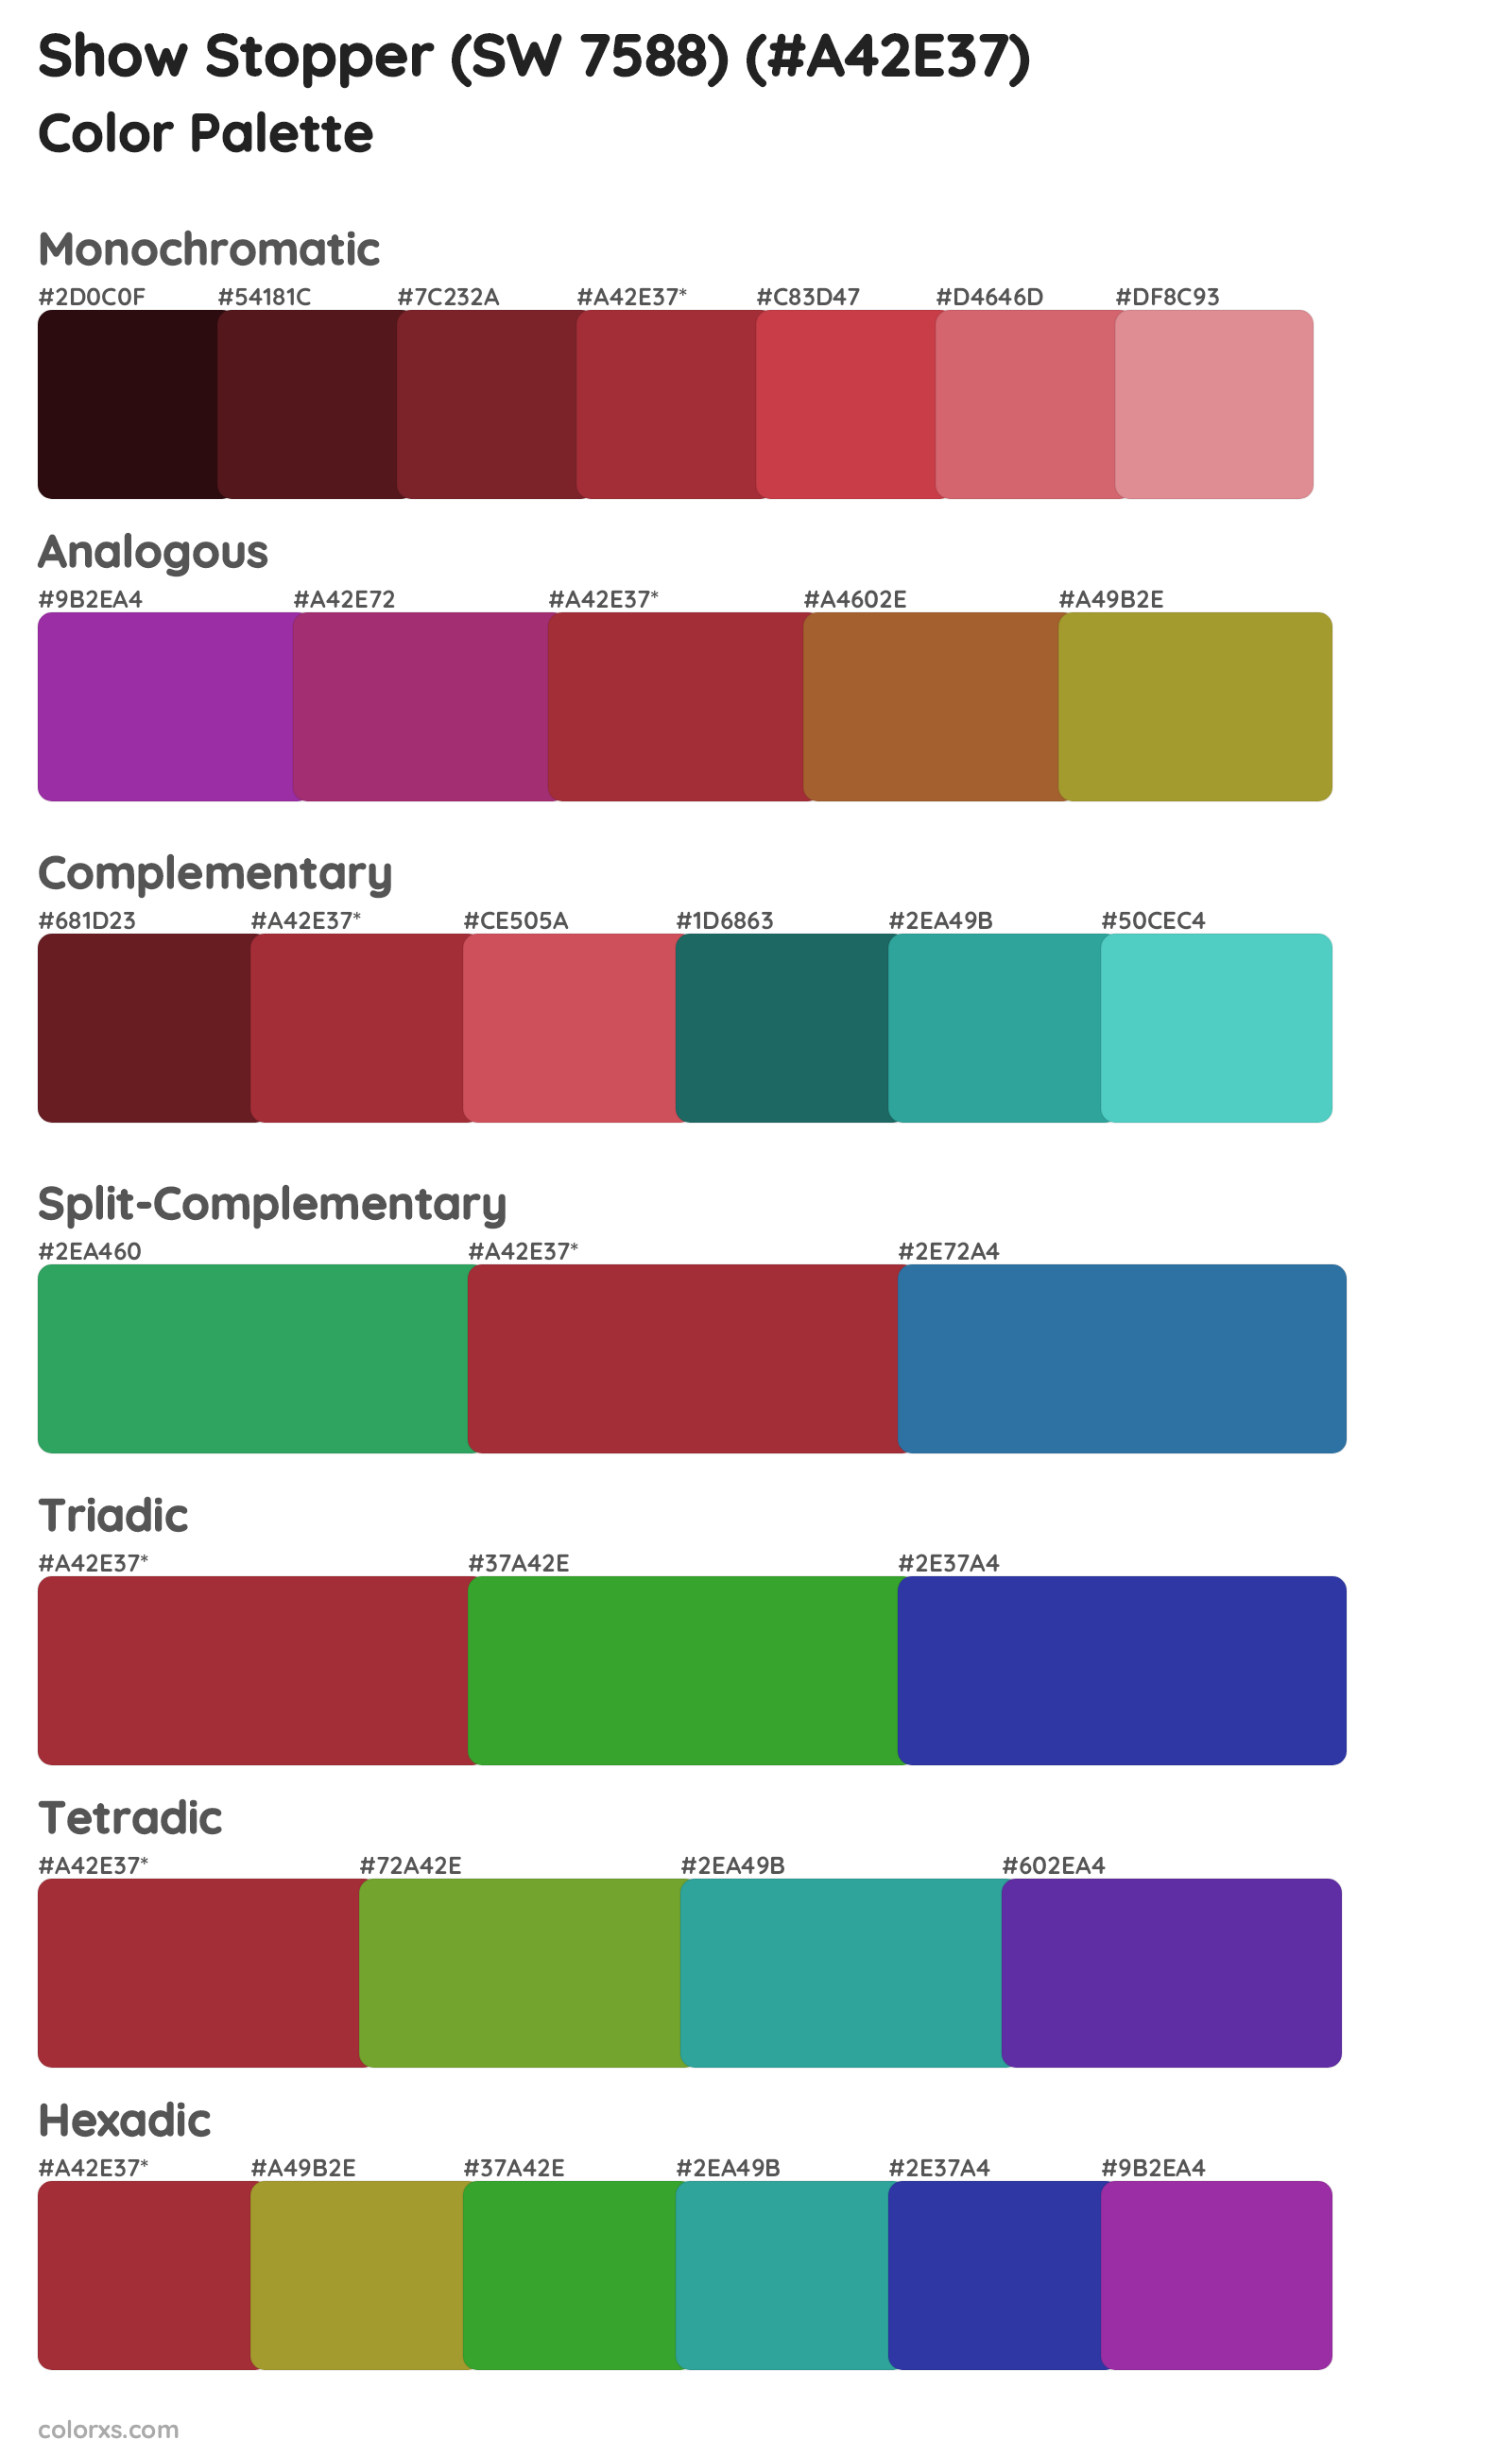 Show Stopper (SW 7588) Color Scheme Palettes